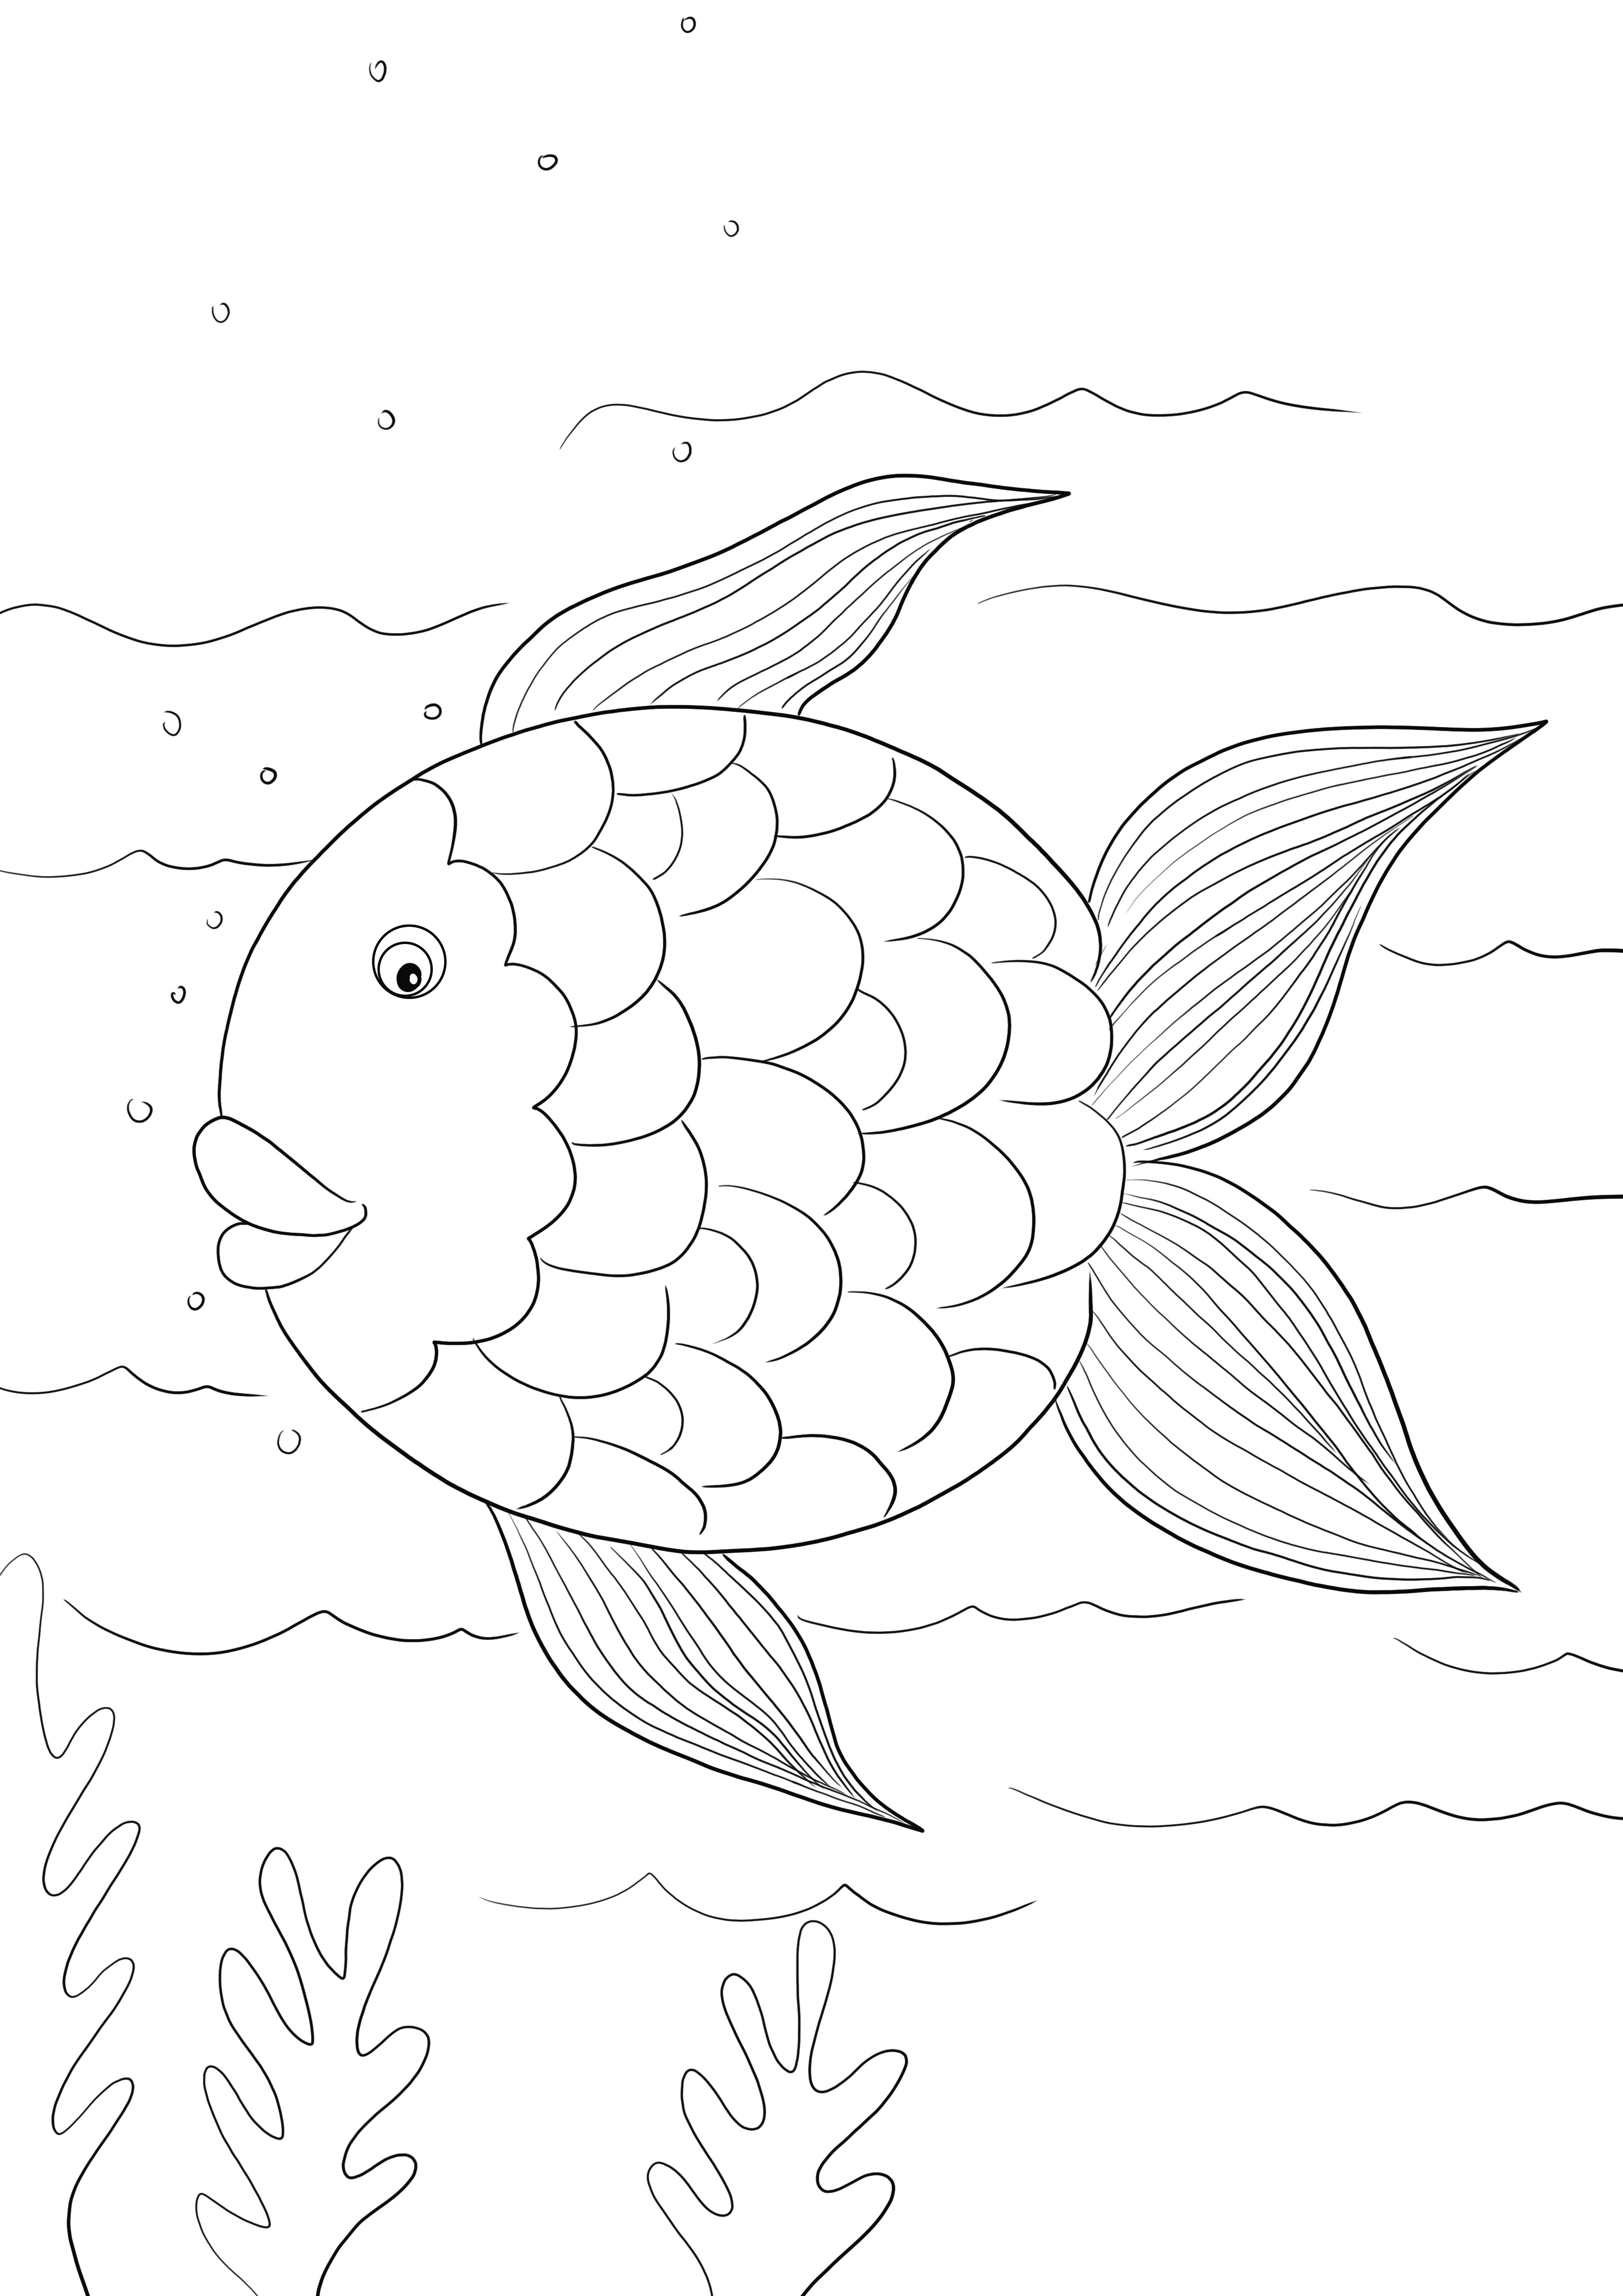 Regenbogenfisch-Vorlage kostenlos zum Ausdrucken oder Herunterladen und zum Ausmalen für Kinder